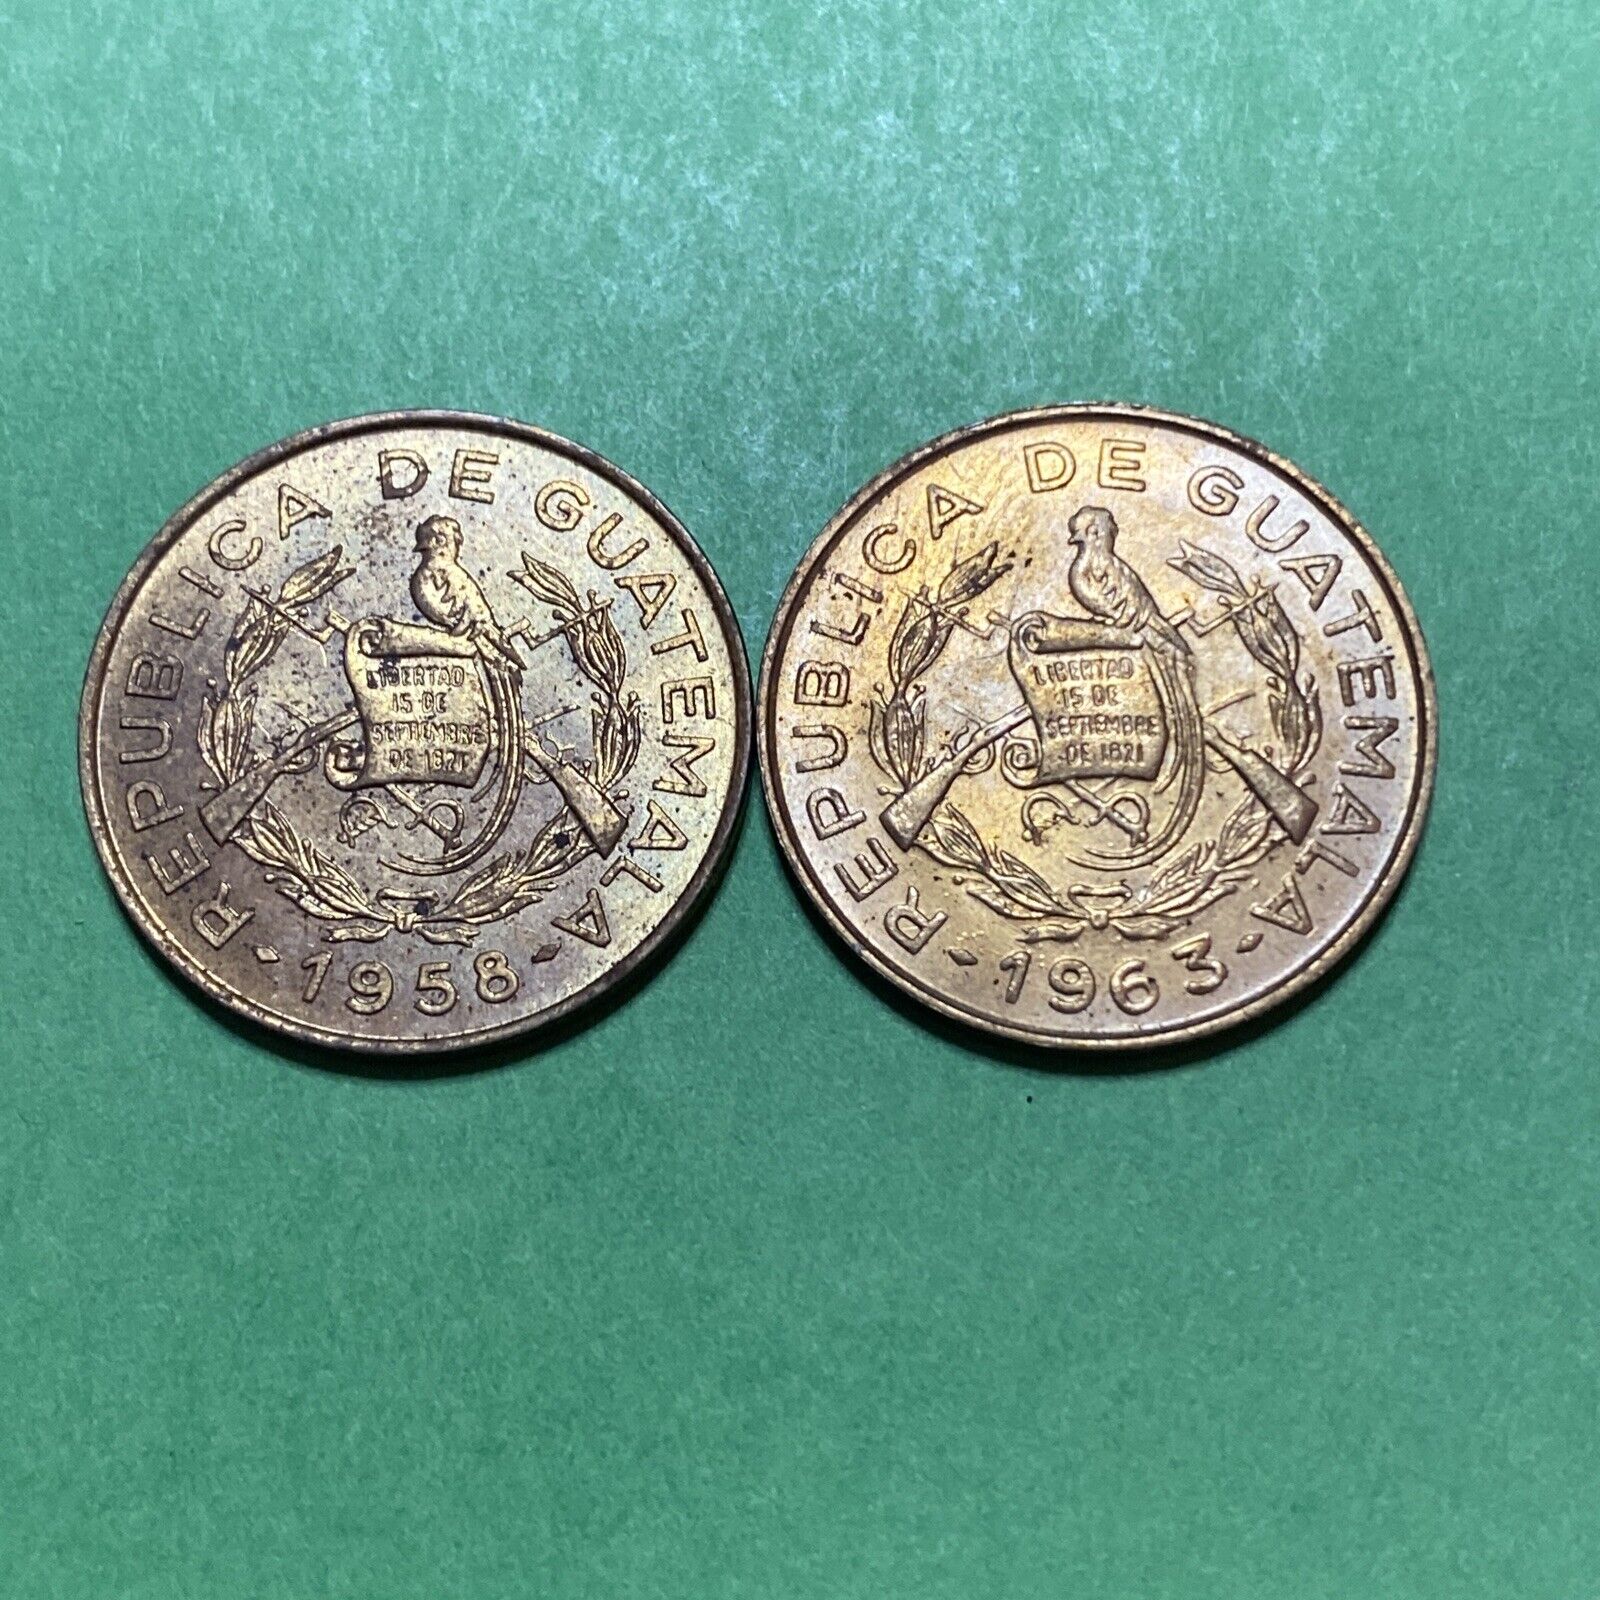 Guatemala 1 Centavo, 1958 & 1963, Brass, Km260, Unc Lot Of 2